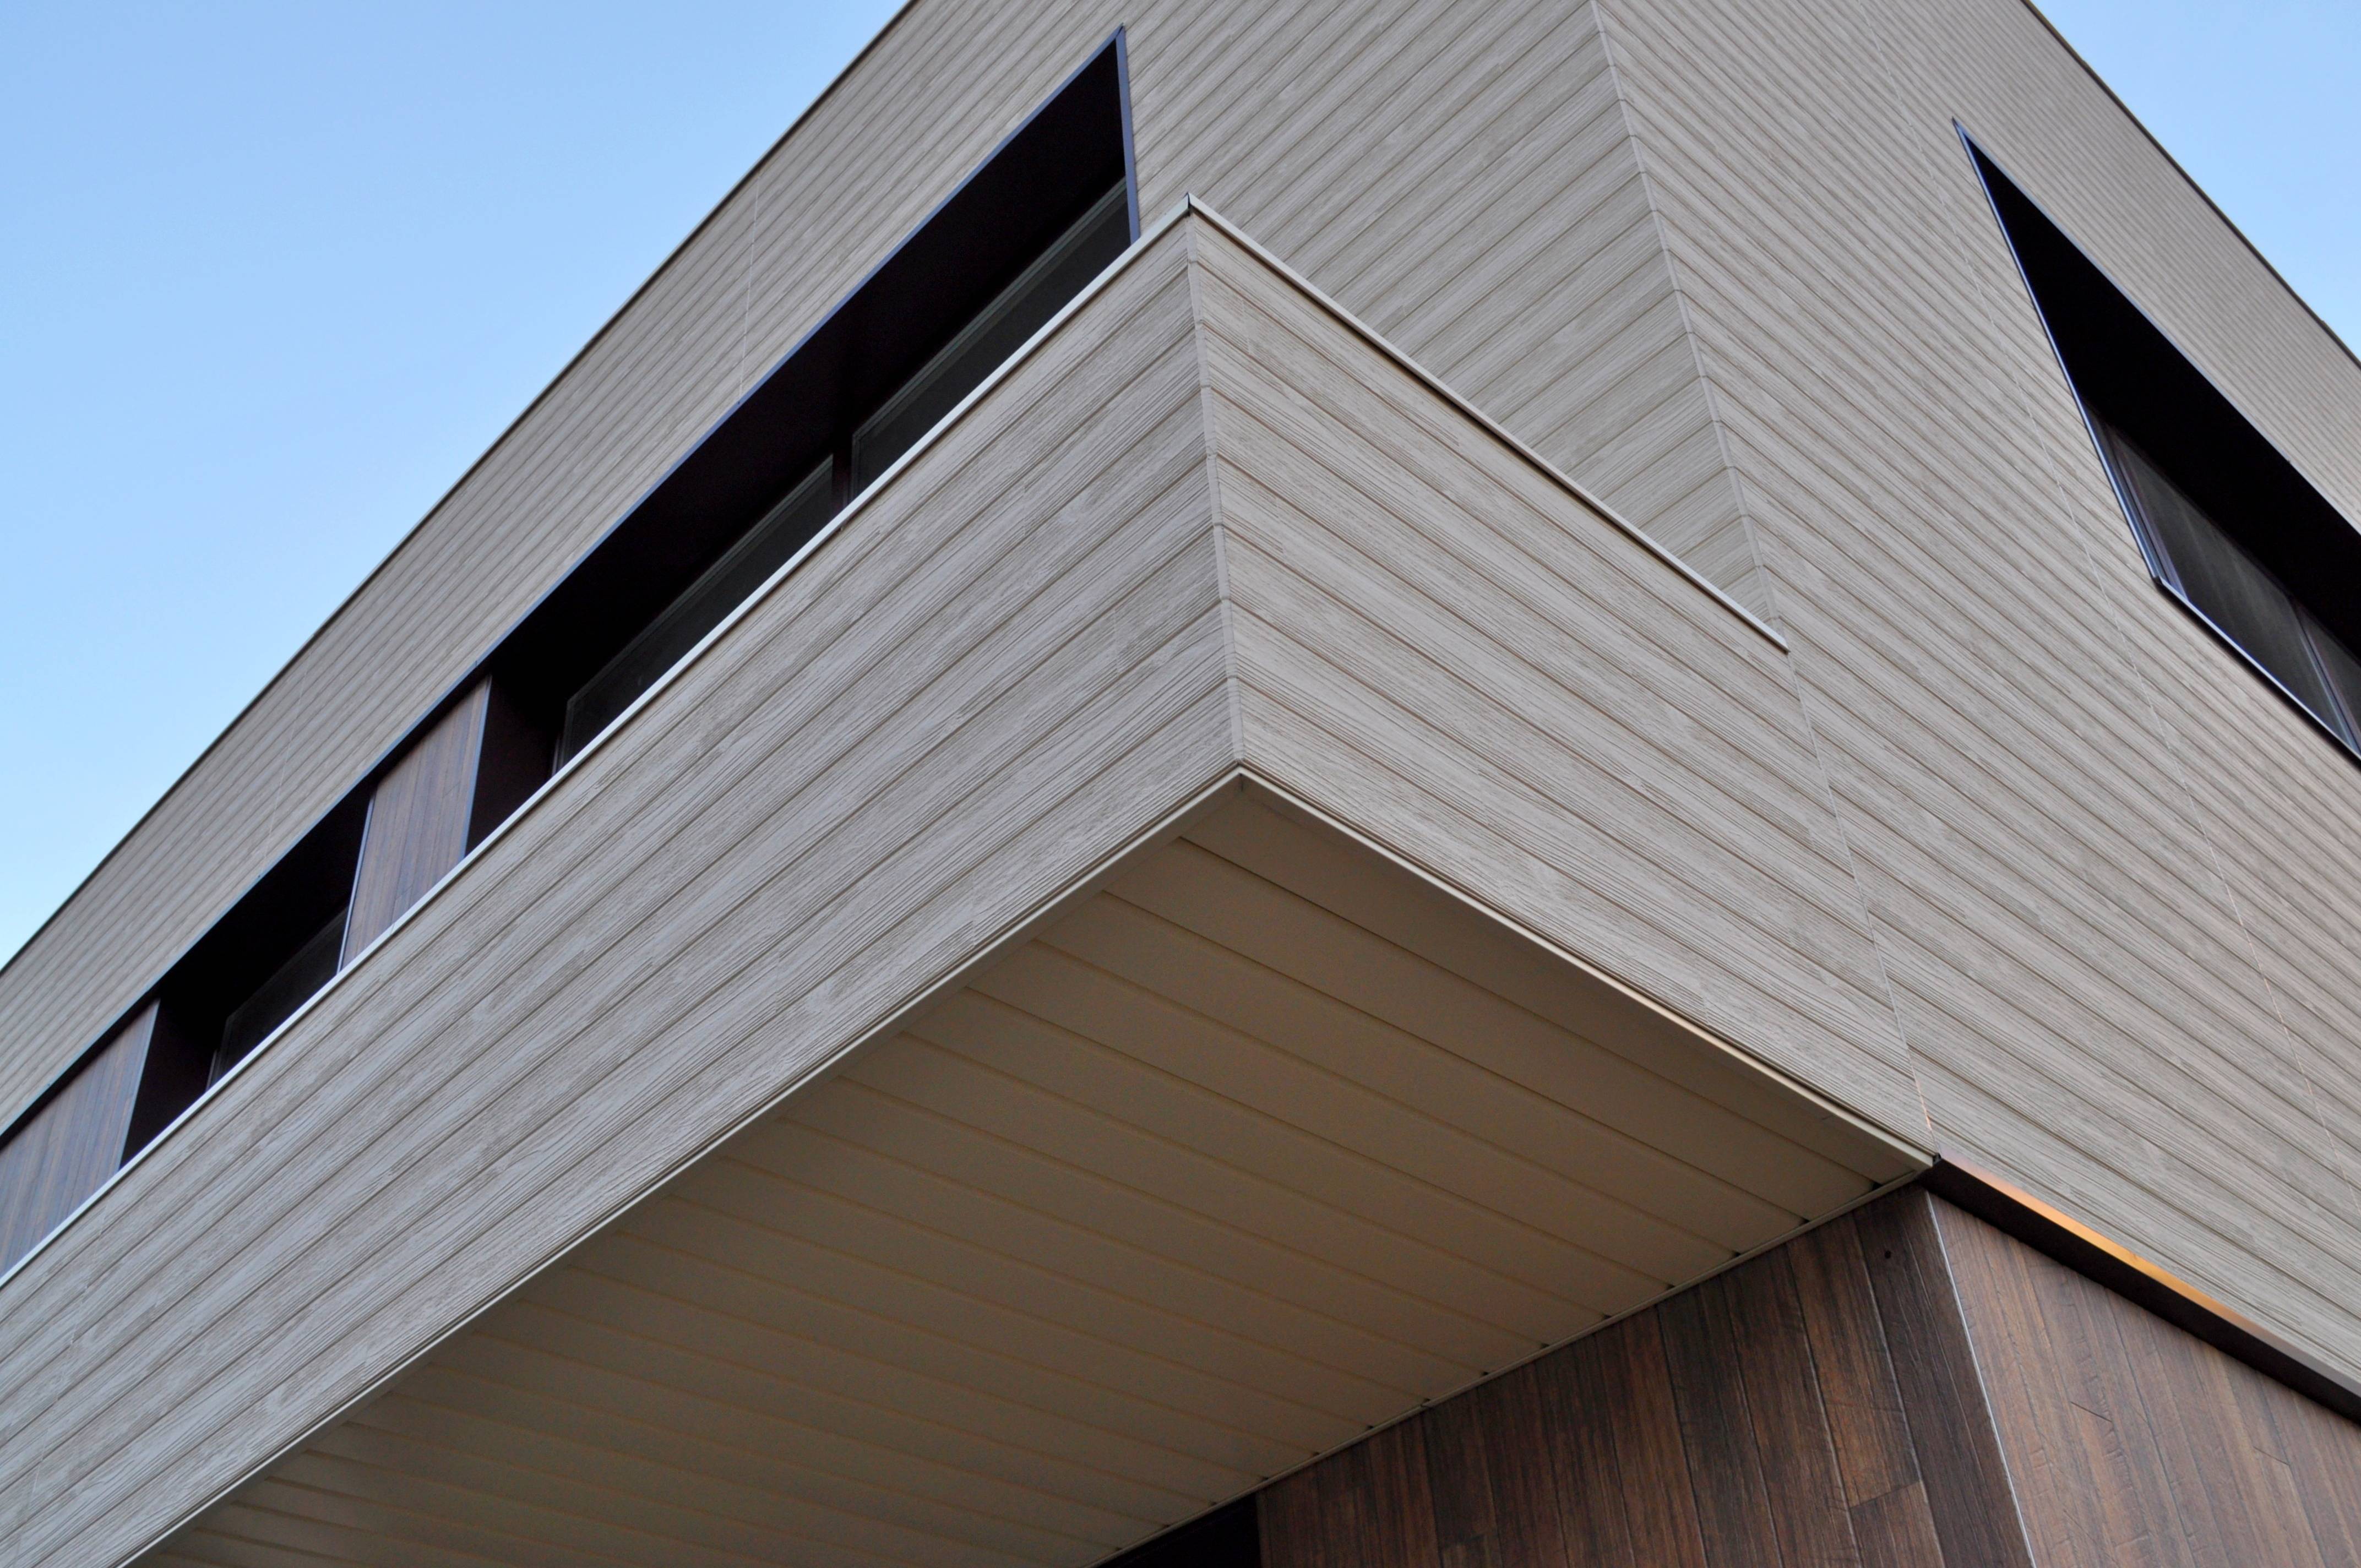 Фасадные панели kmew плюсы и минусы японских панелей для фасада, технические характеристики технология укладки